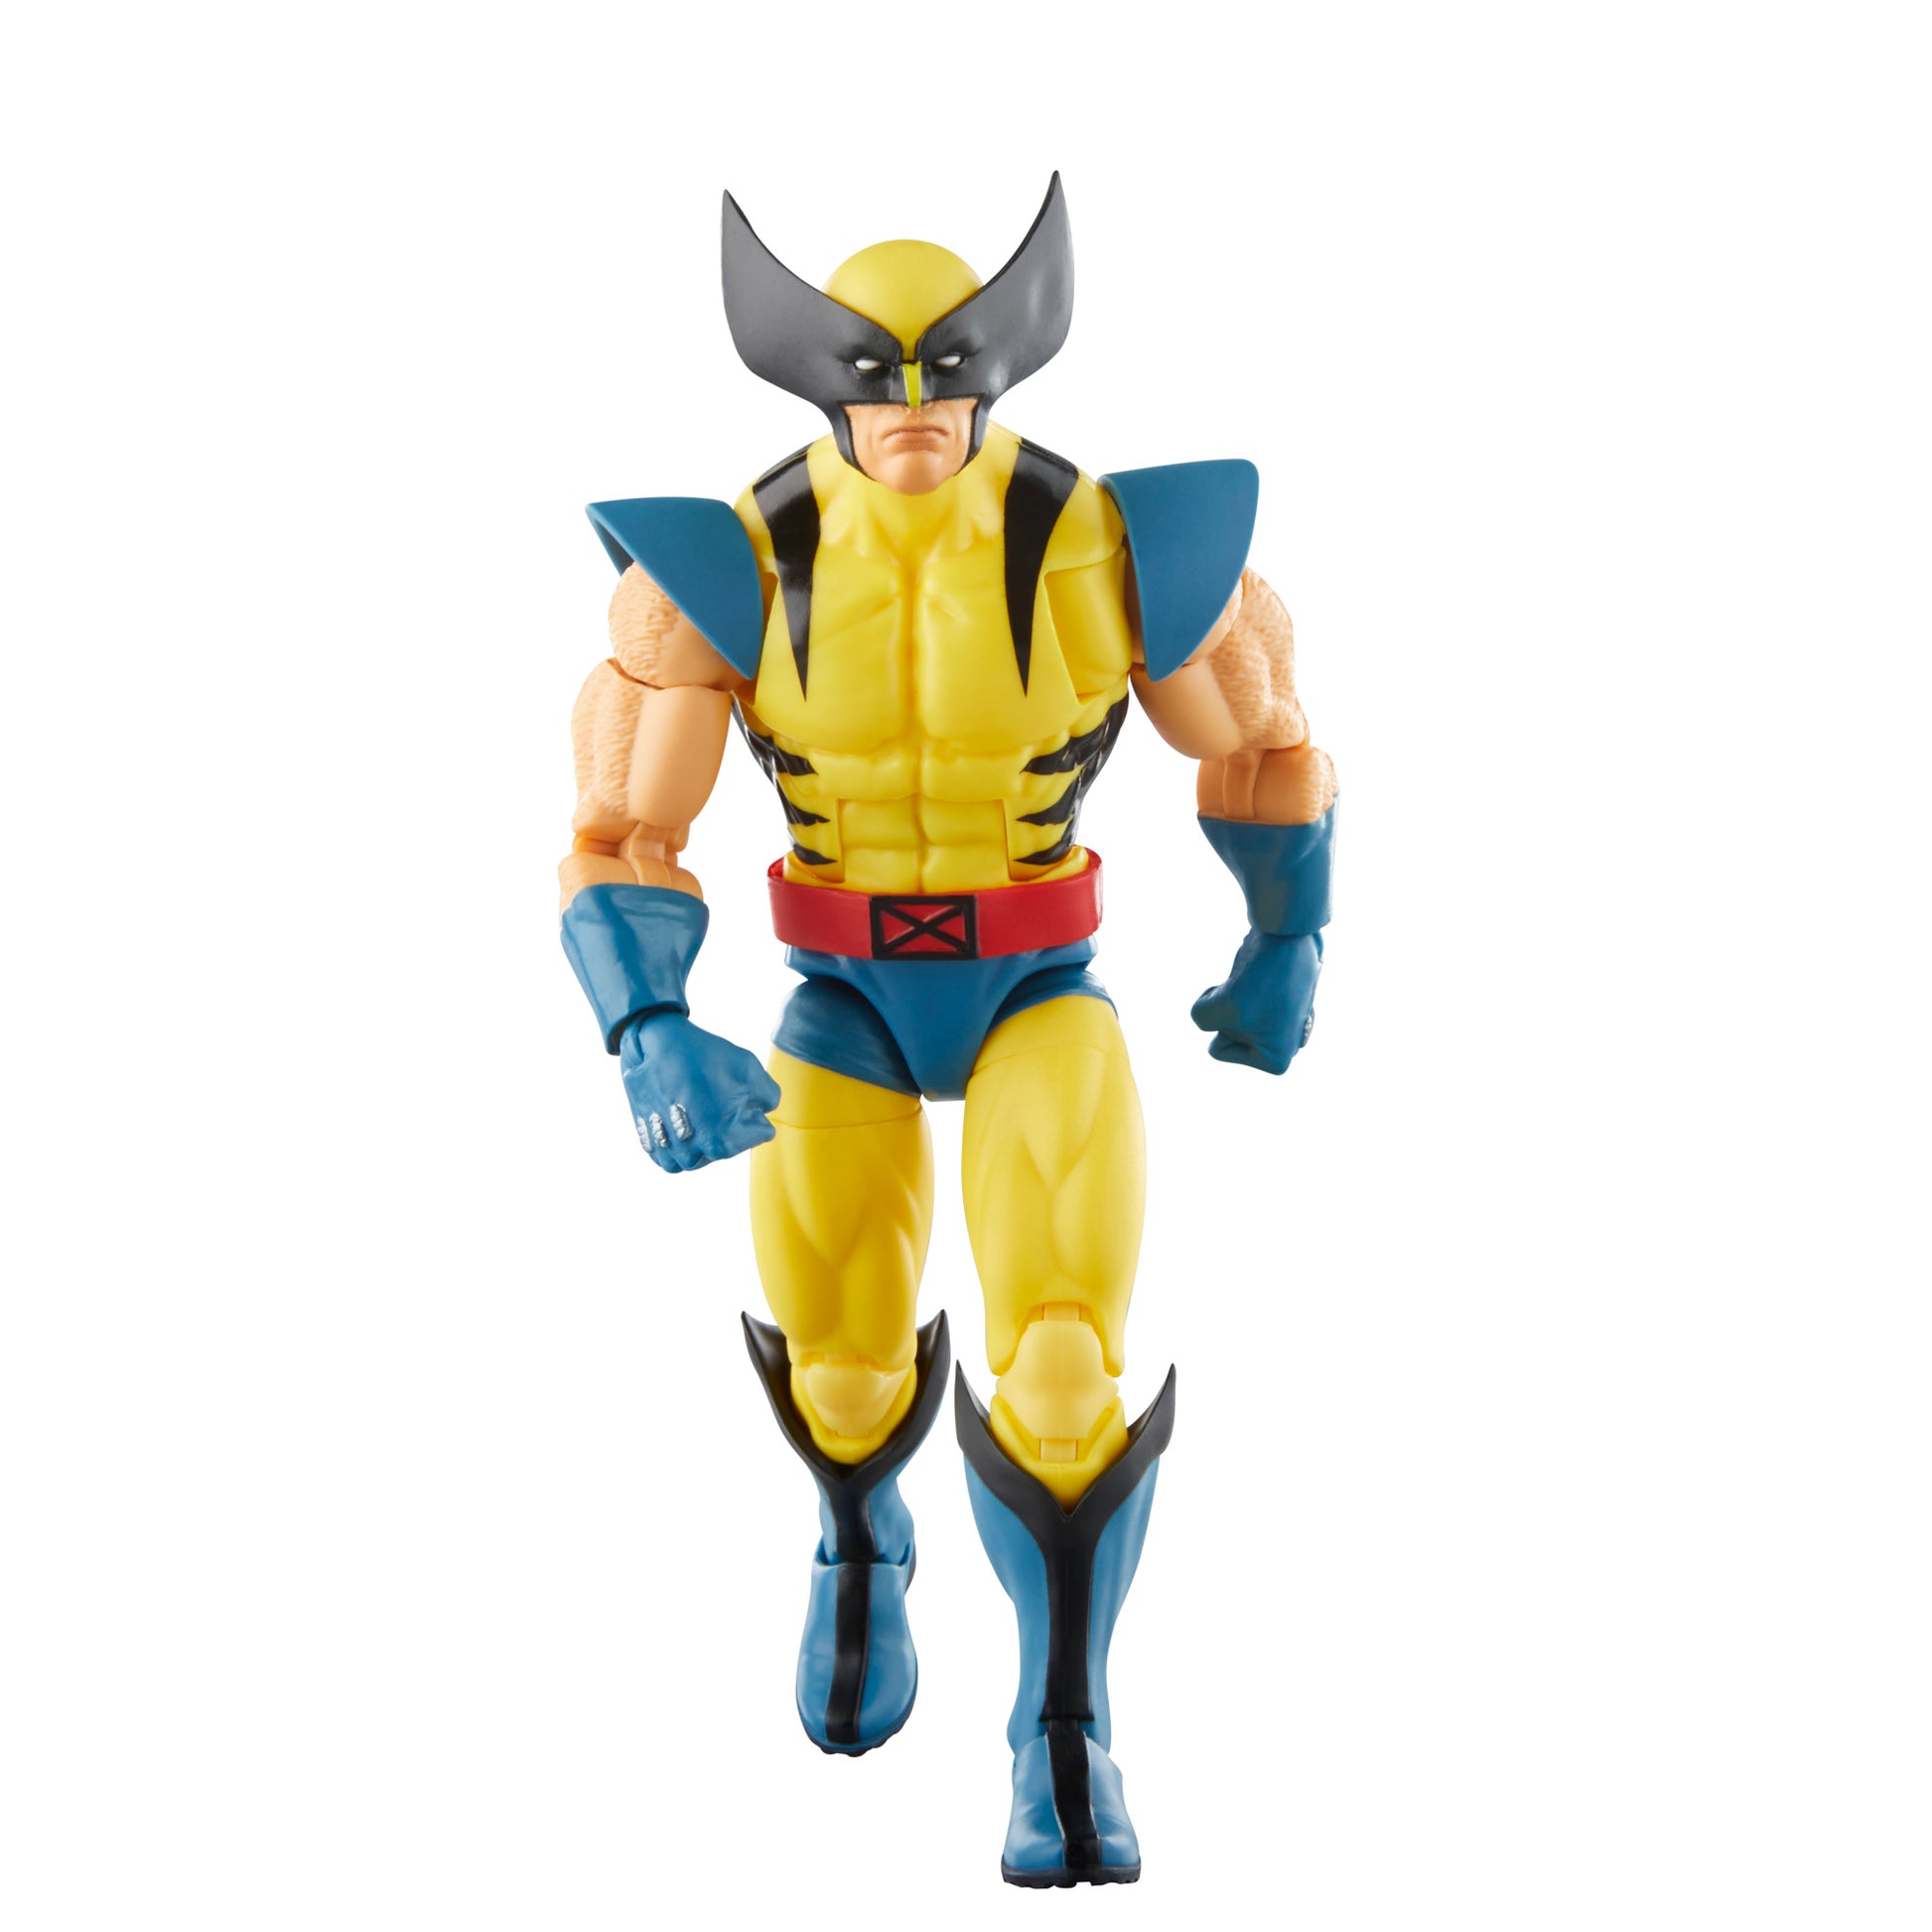 Marvel legends X-Men Wolverine Action Figure walking - Heretoserveyou